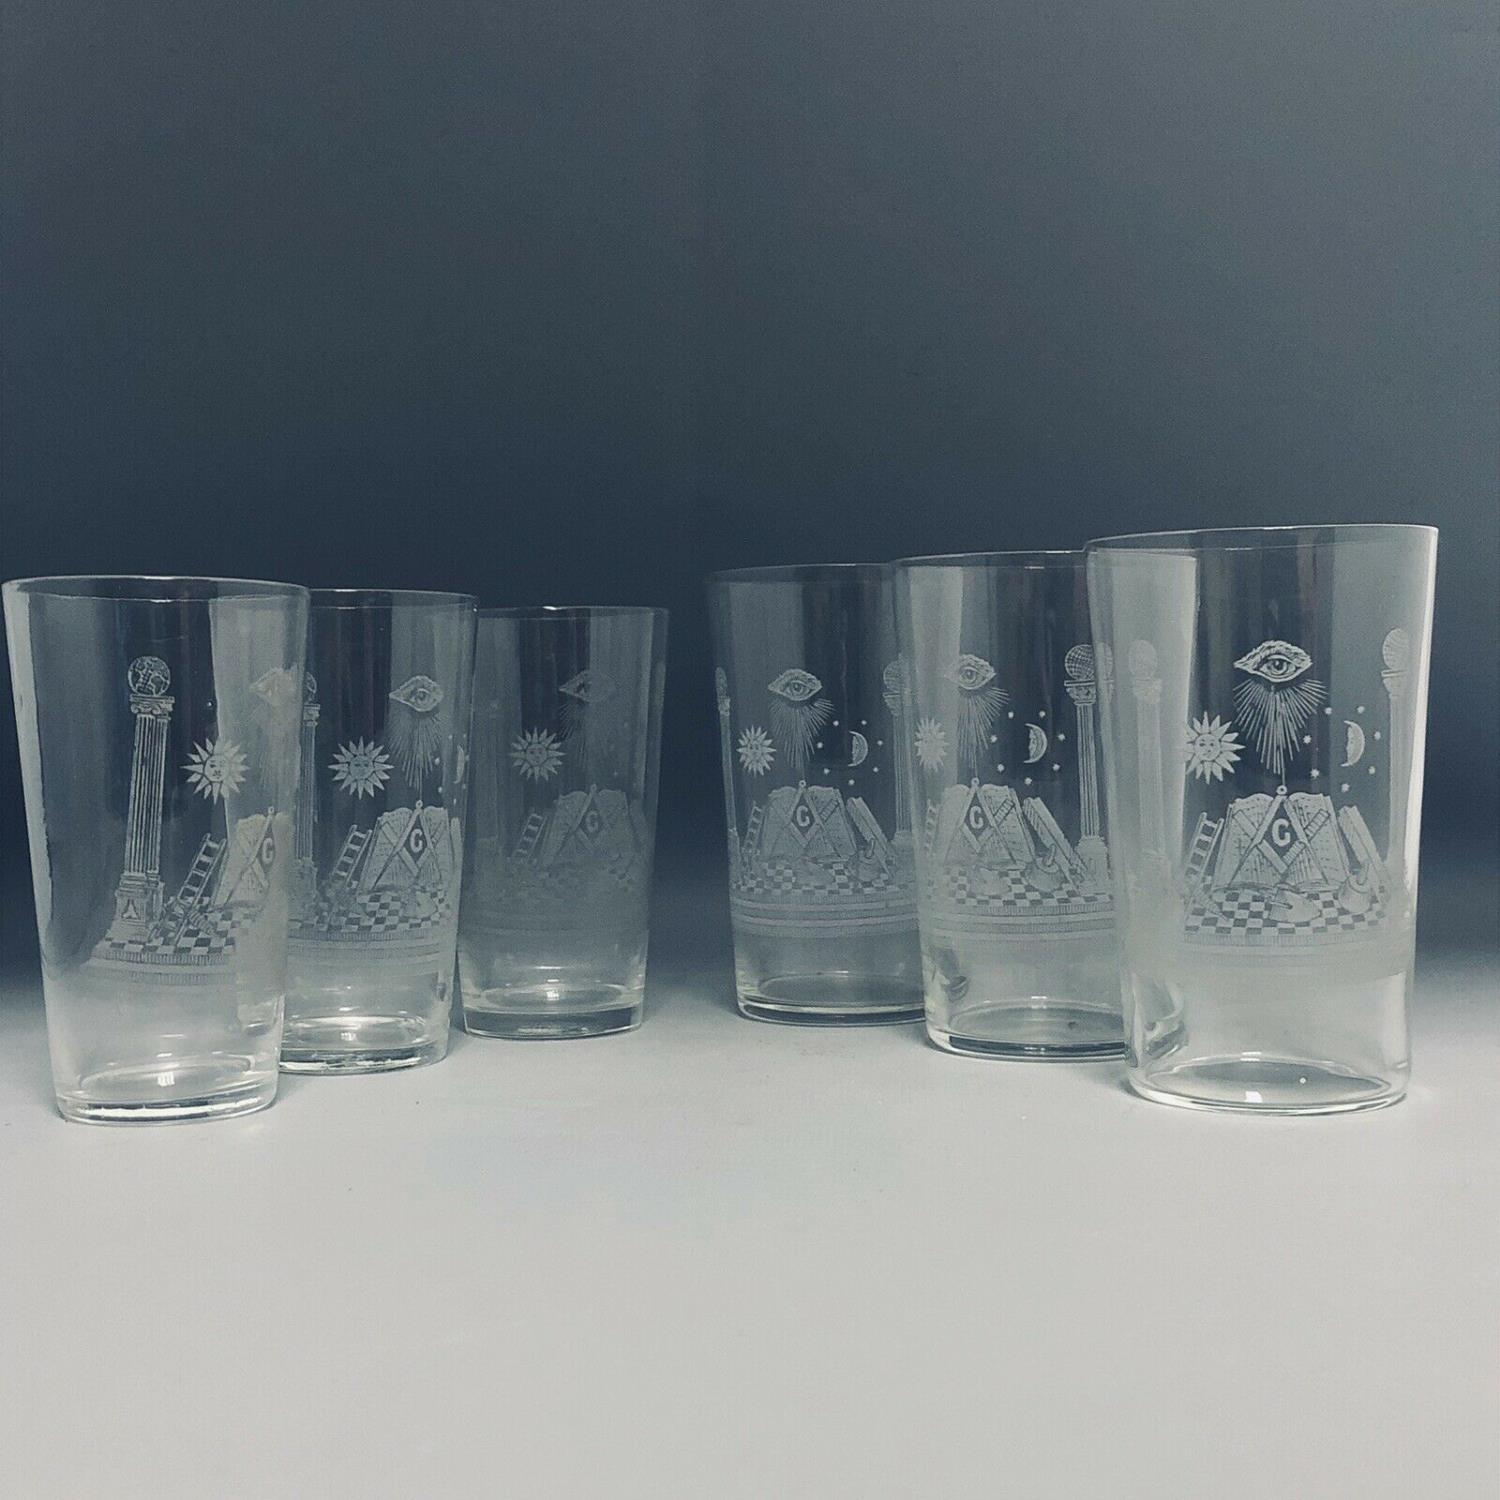 A set of 6 Masons Emblem Engraved Glass Tumblers Glasses - Masonic Interest